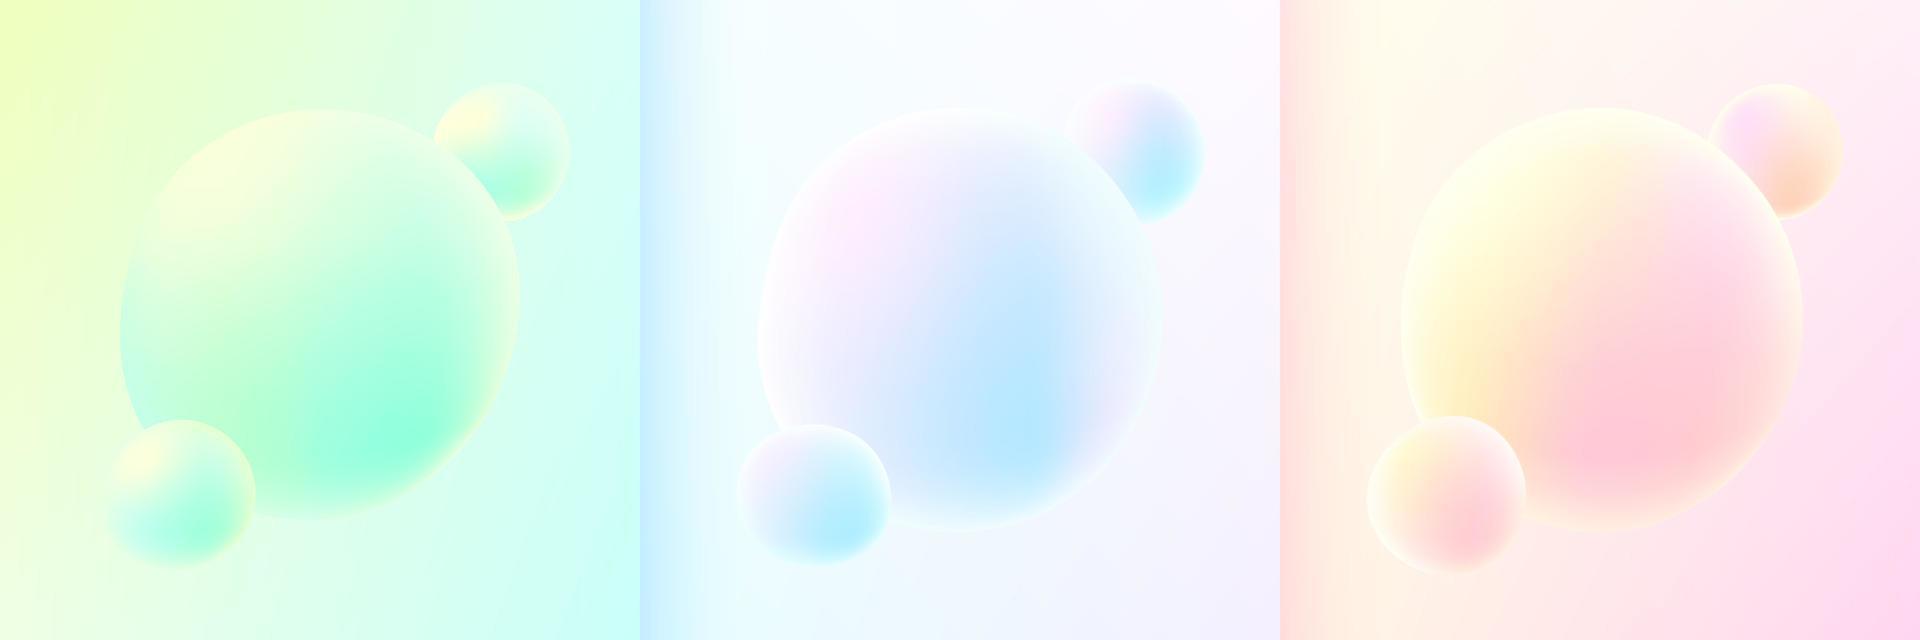 uppsättning abstrakt 3d flytande vätska blå, rosa, grön och gul bakgrund. kreativa minimala sfärbollar eller bubbla trendiga färgglada gradientdesign för omslagsbroschyr, flygblad, affisch, bannerwebb. vektor